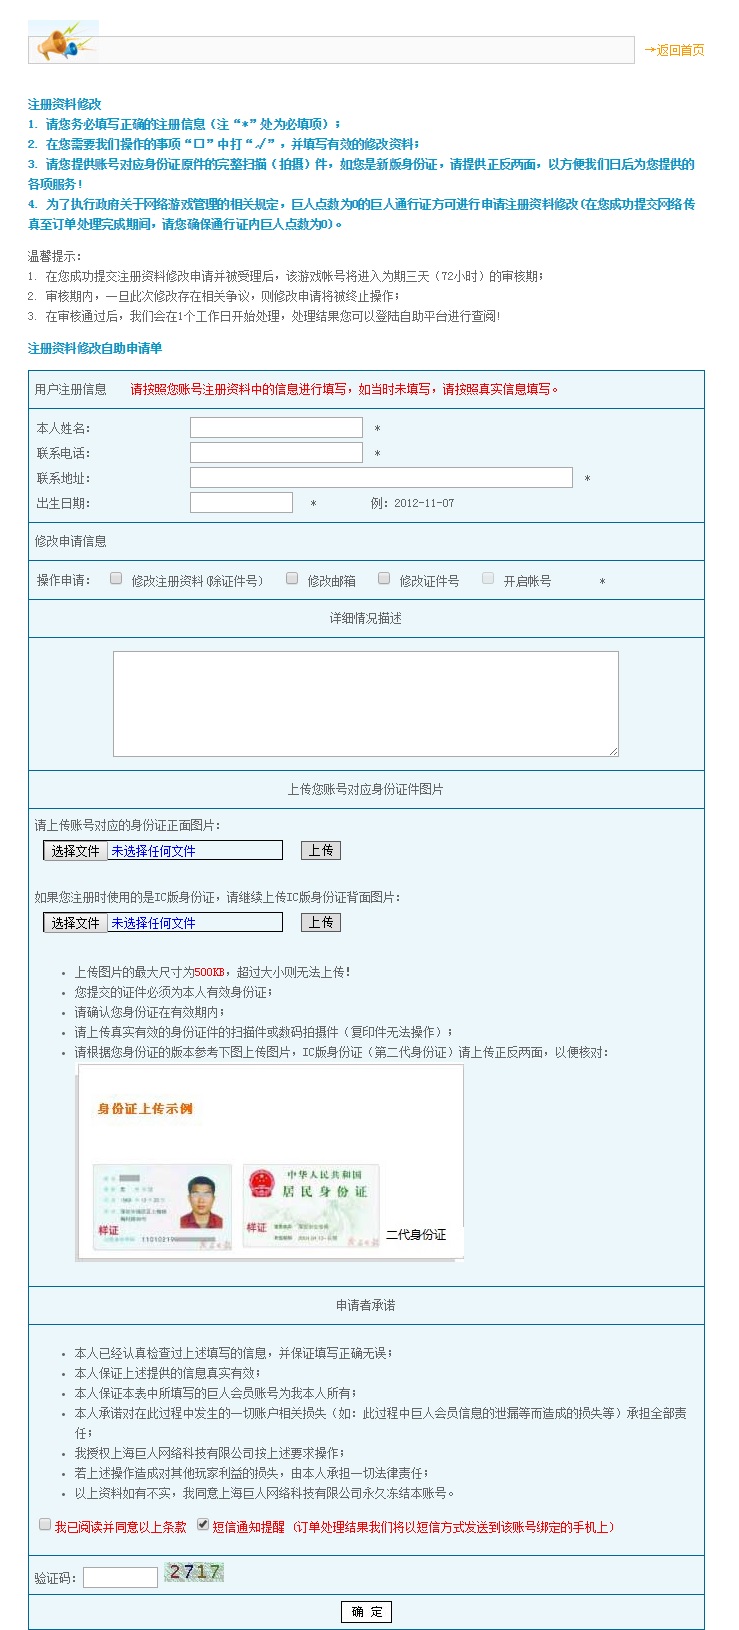 注册资料修改自助申请单.jpg